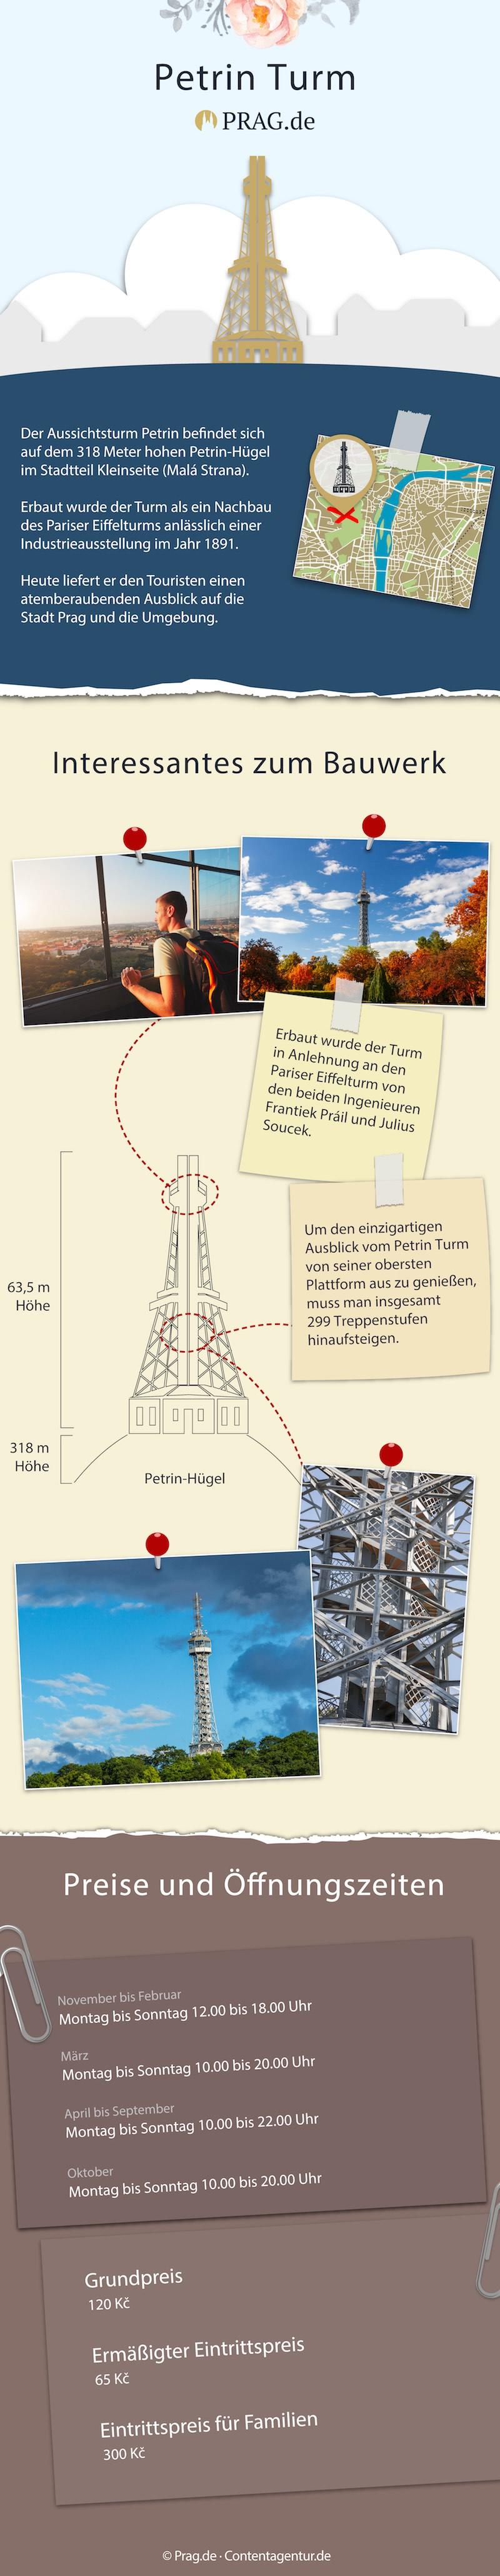 Petrin Turm in Prag